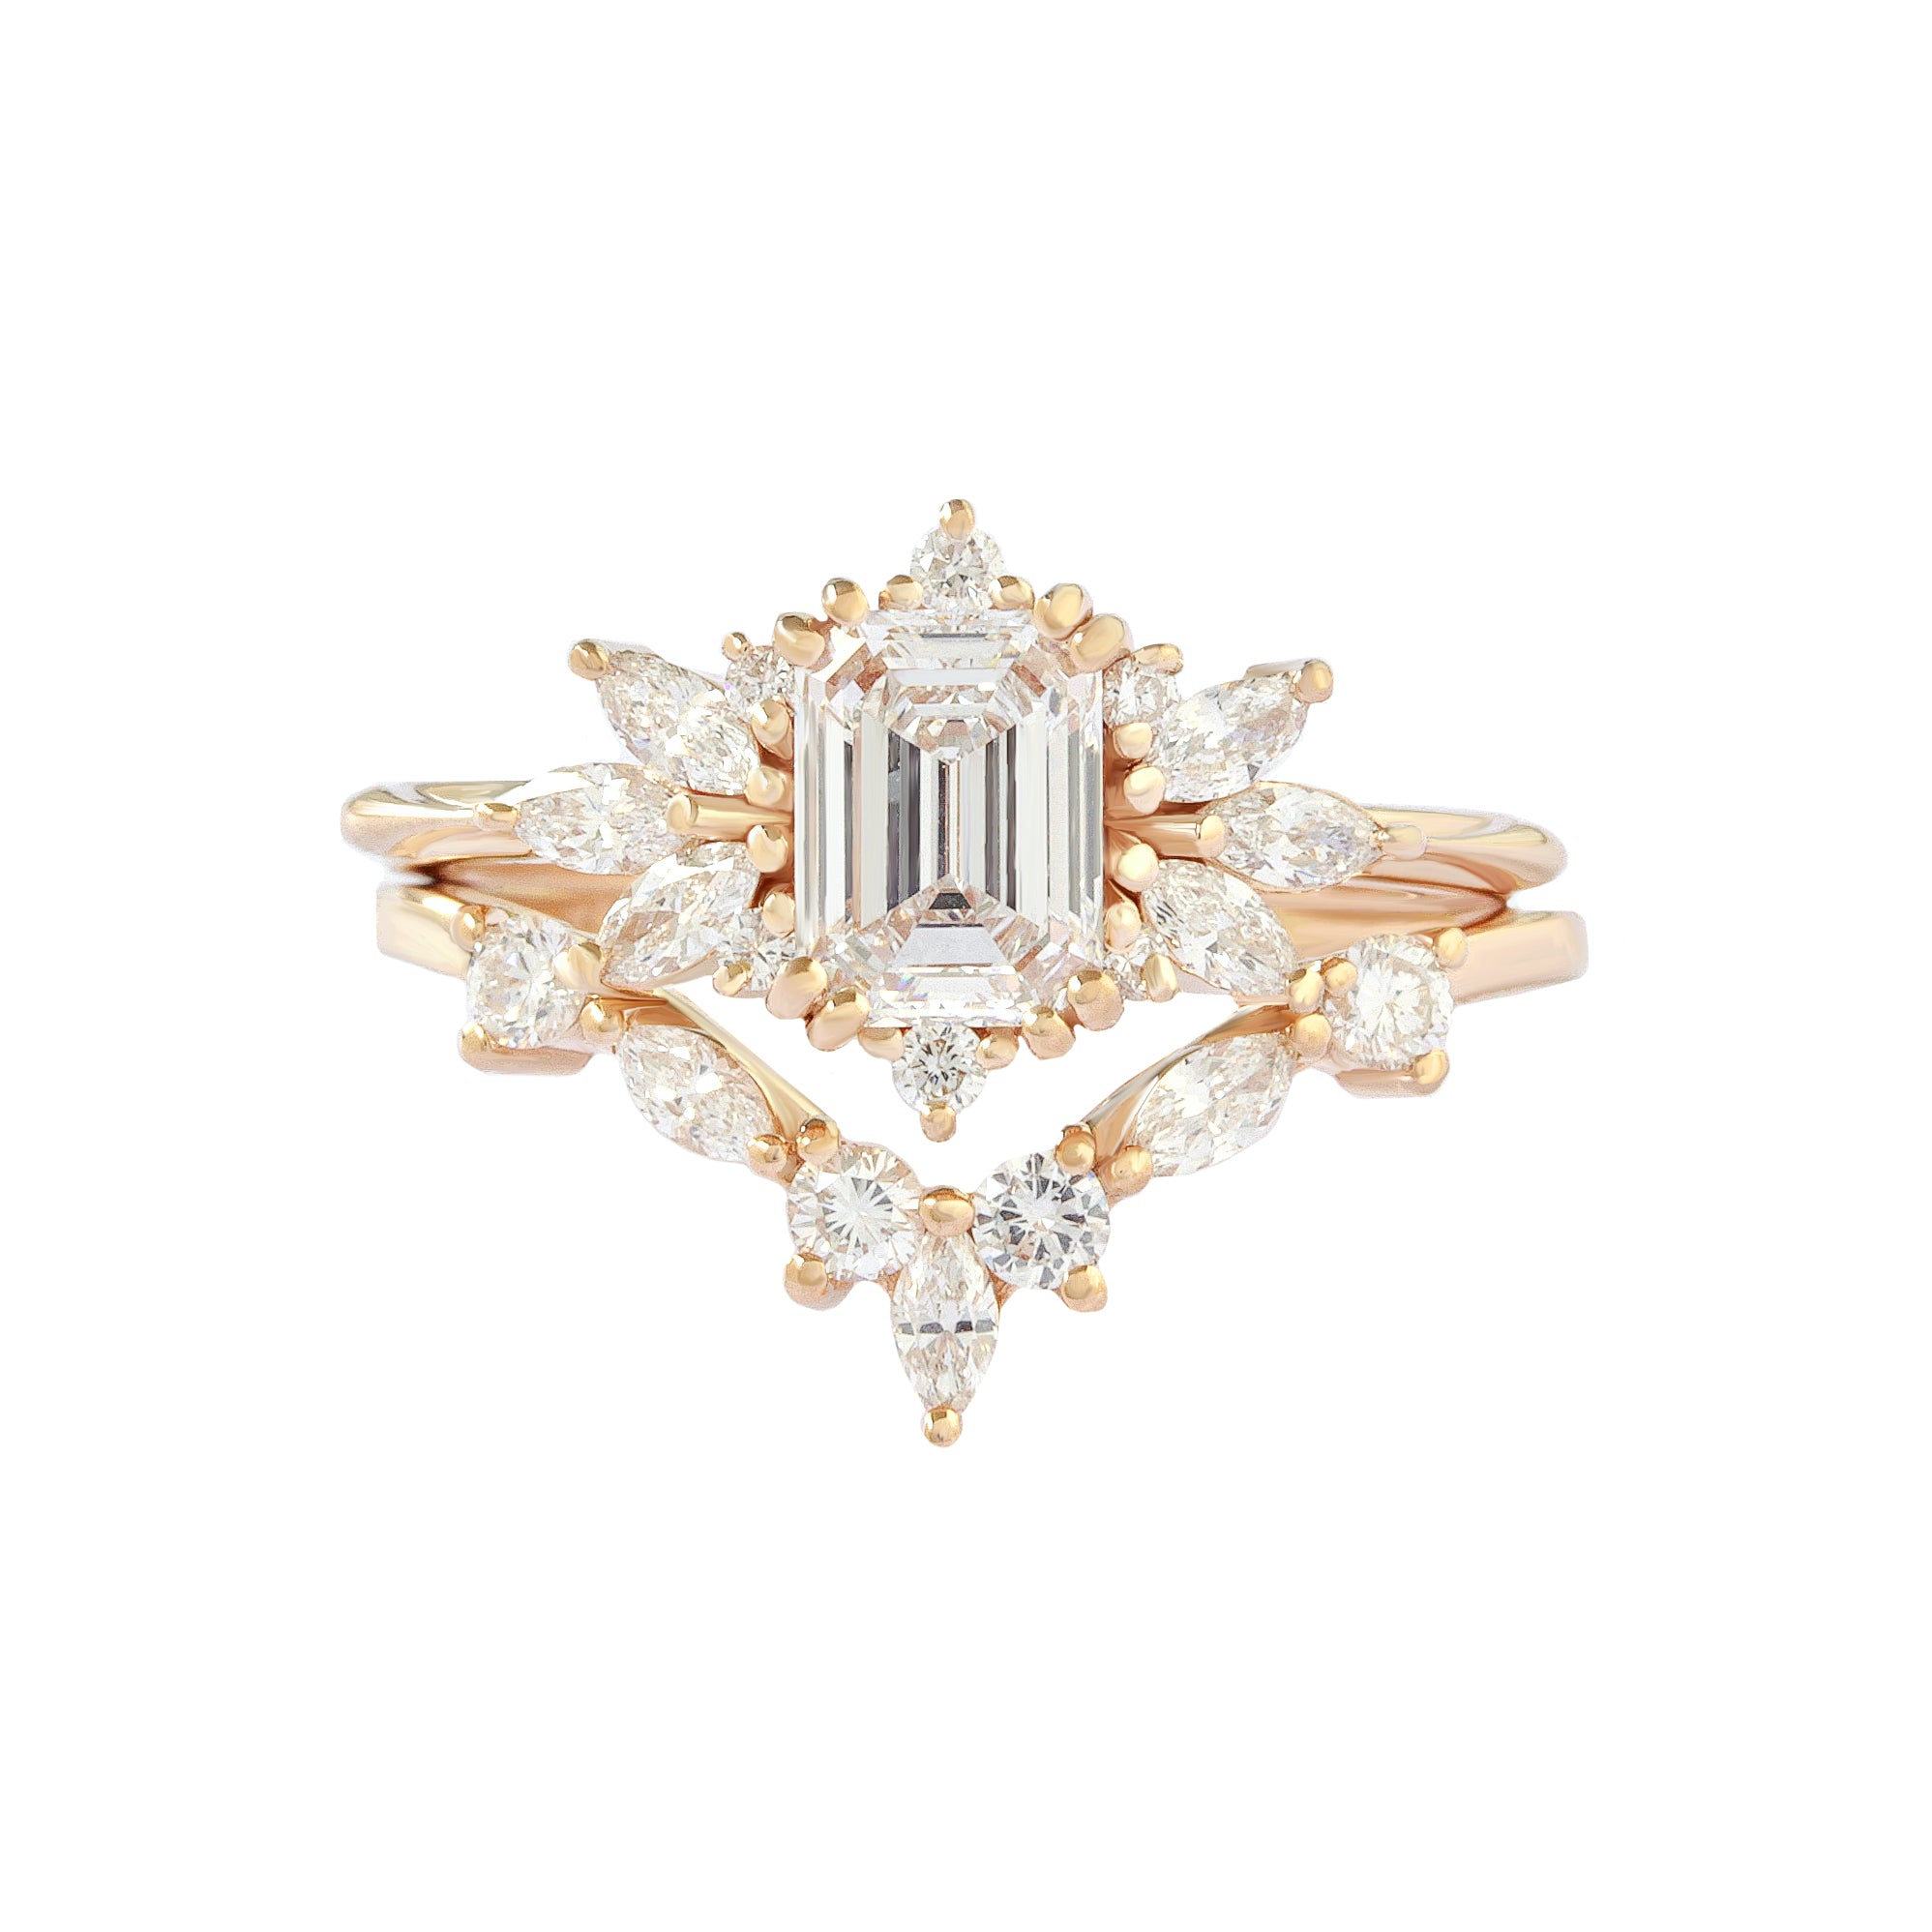 Emerald Cut Diamond Engagement Ring "Spark" & "Hermes" Nesting Rings